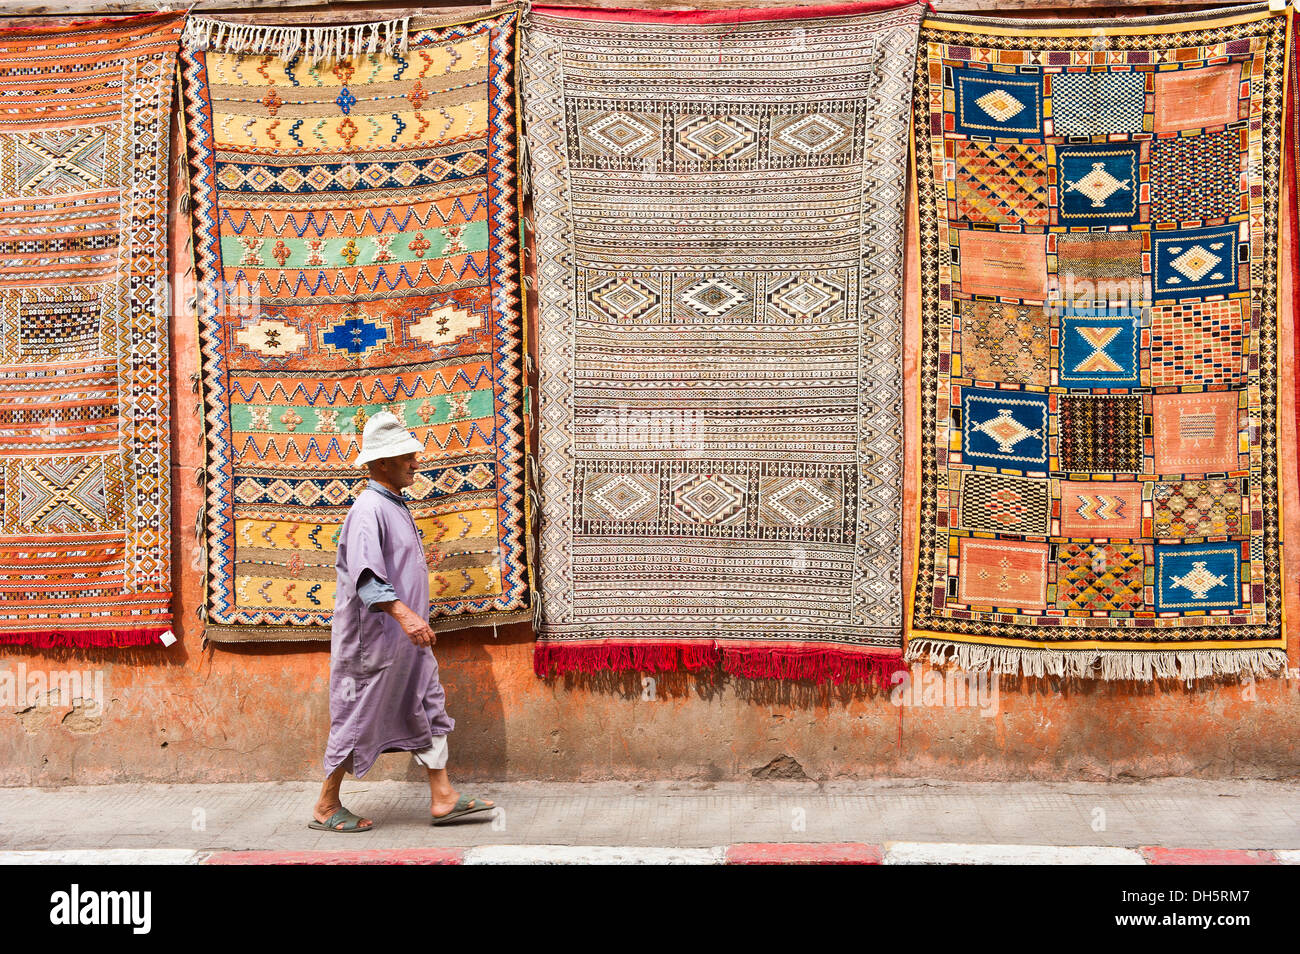 Moquette o tappeti con gli arabi e i simboli di Berbera e modelli, appeso a una facciata per vendita, uomo anziano in una djellabah passato a piedi Foto Stock